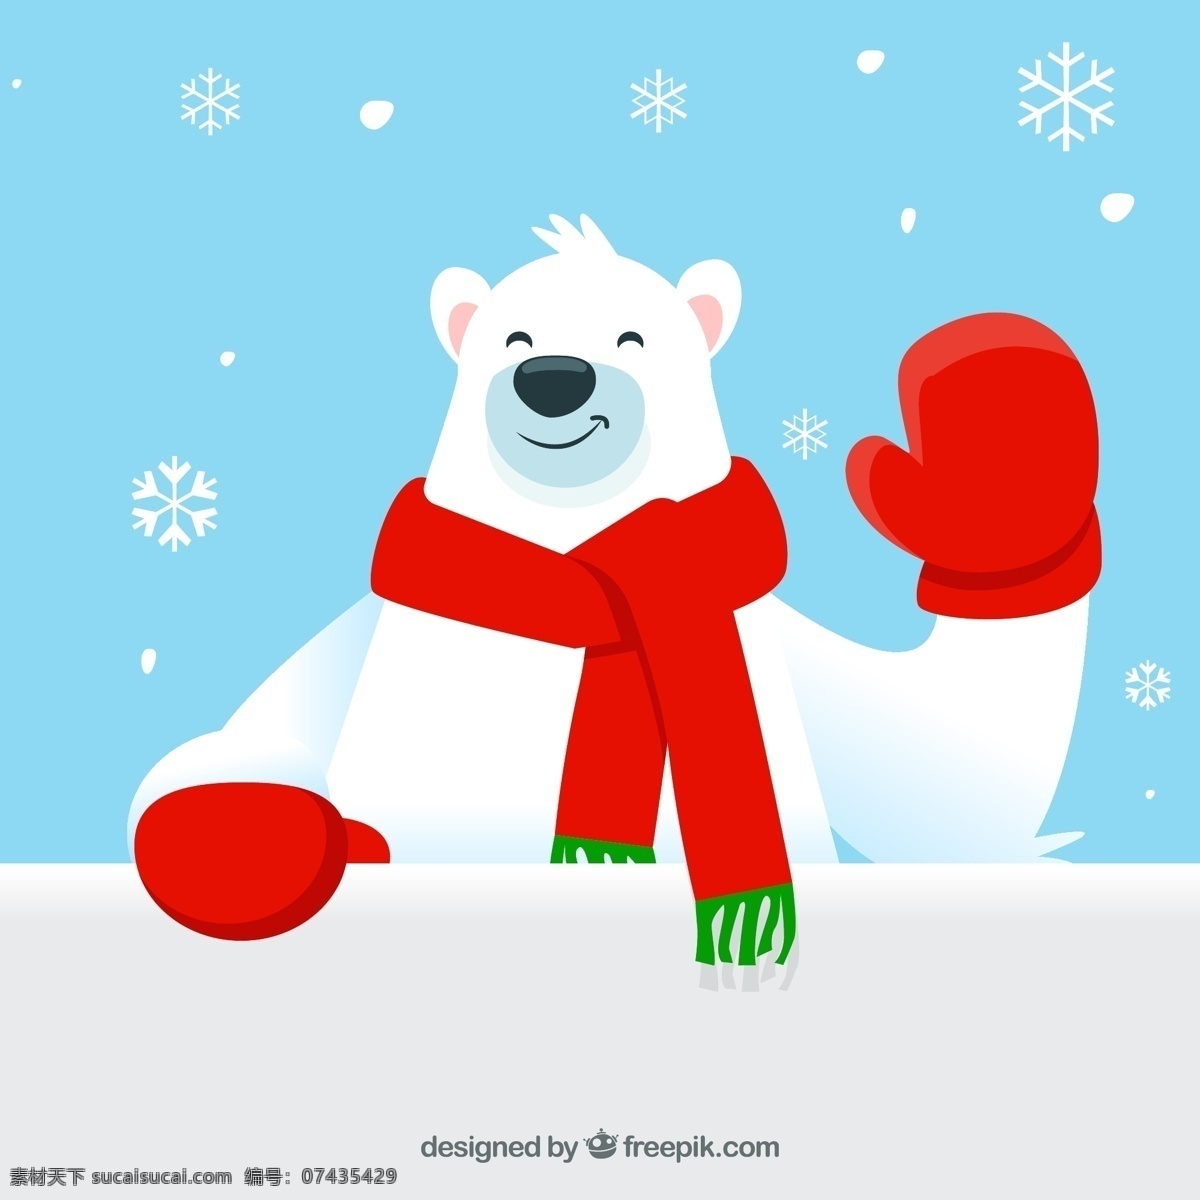 可爱 打招呼 北极熊 矢量 冬天 动物 节日 卡通 圣诞节 围巾 雪花